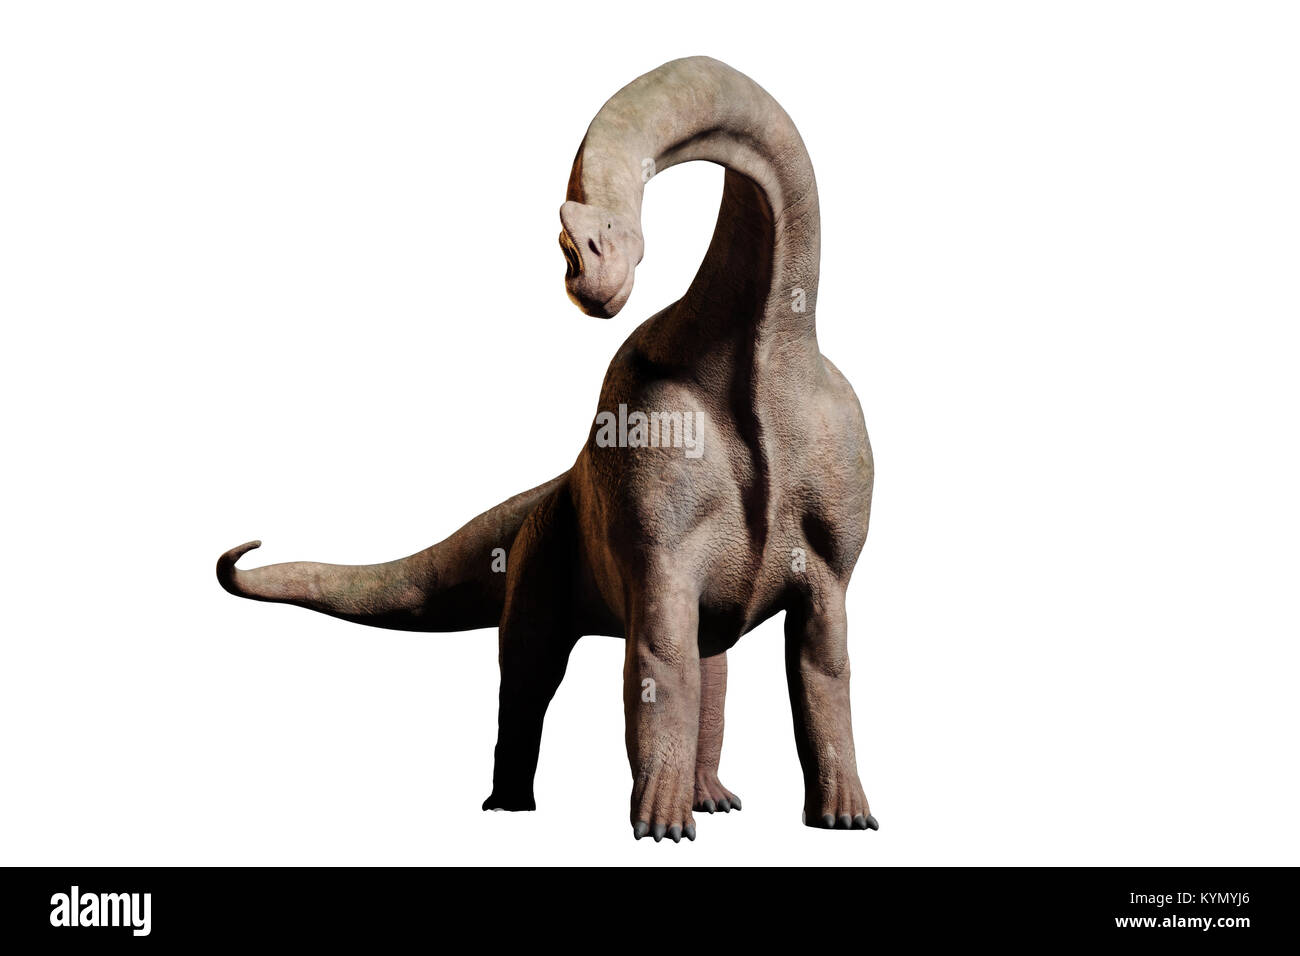 Brachiosaurus altithorax dinosaur (3d illustration isolated on white background) Stock Photo